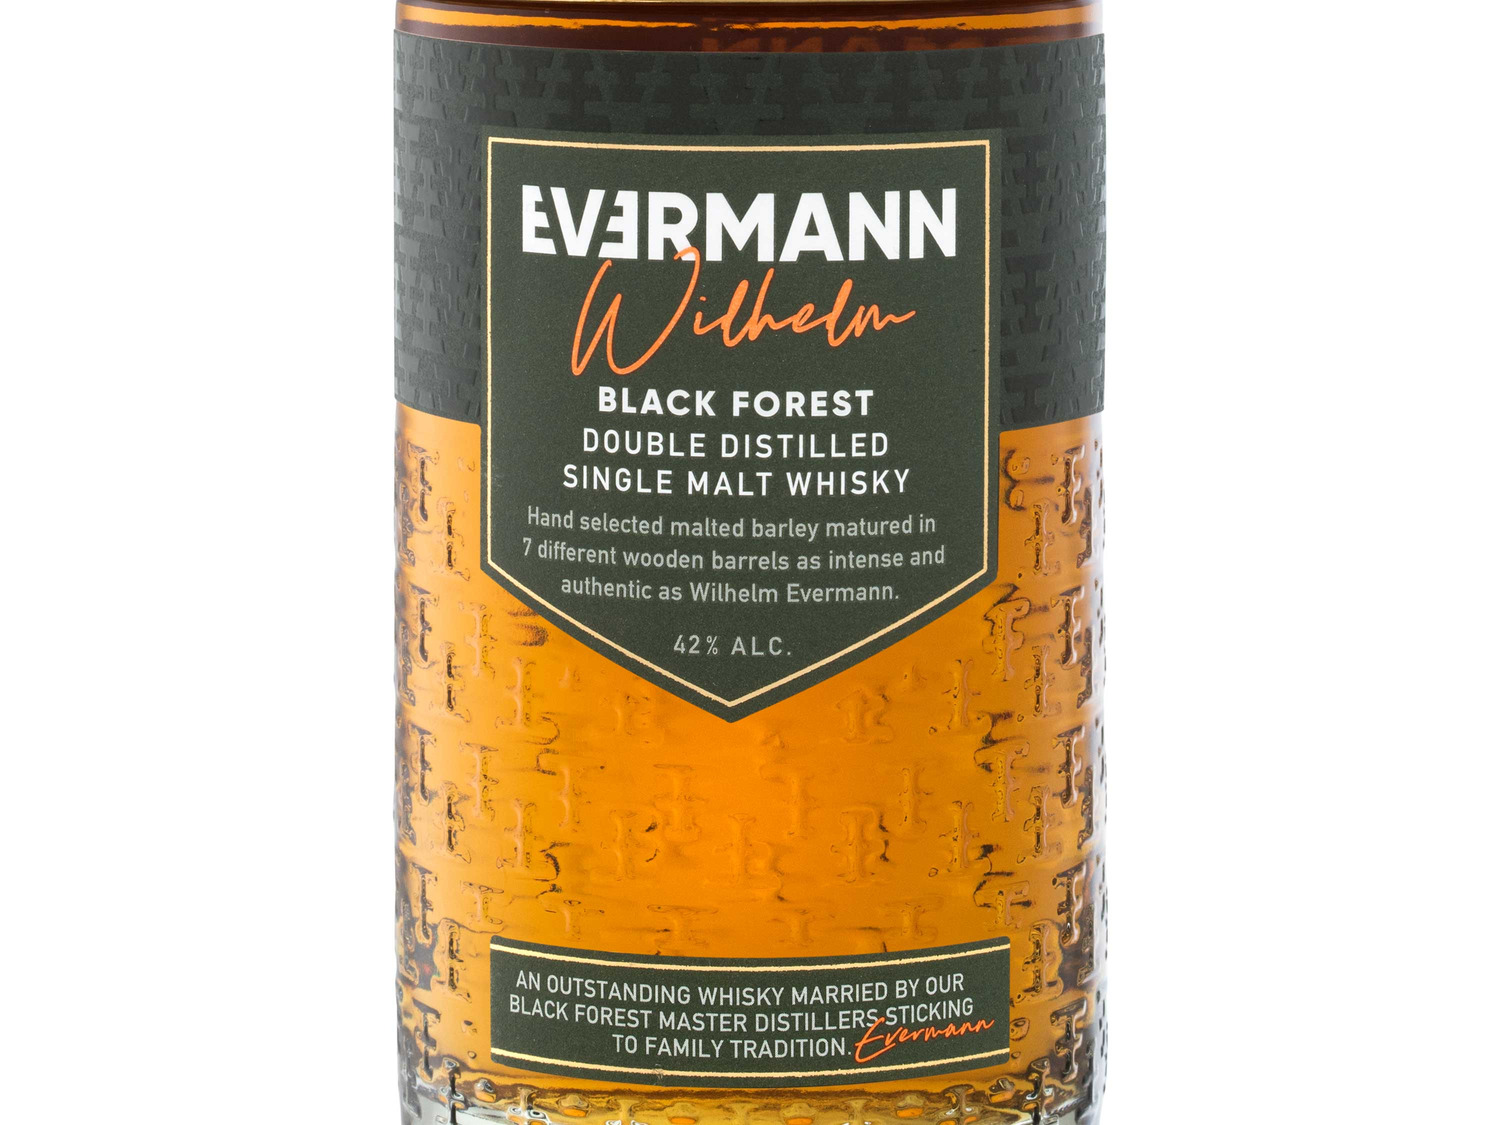 Evermann Wilhelm Black Forest Malt Whisky 42% V… Single